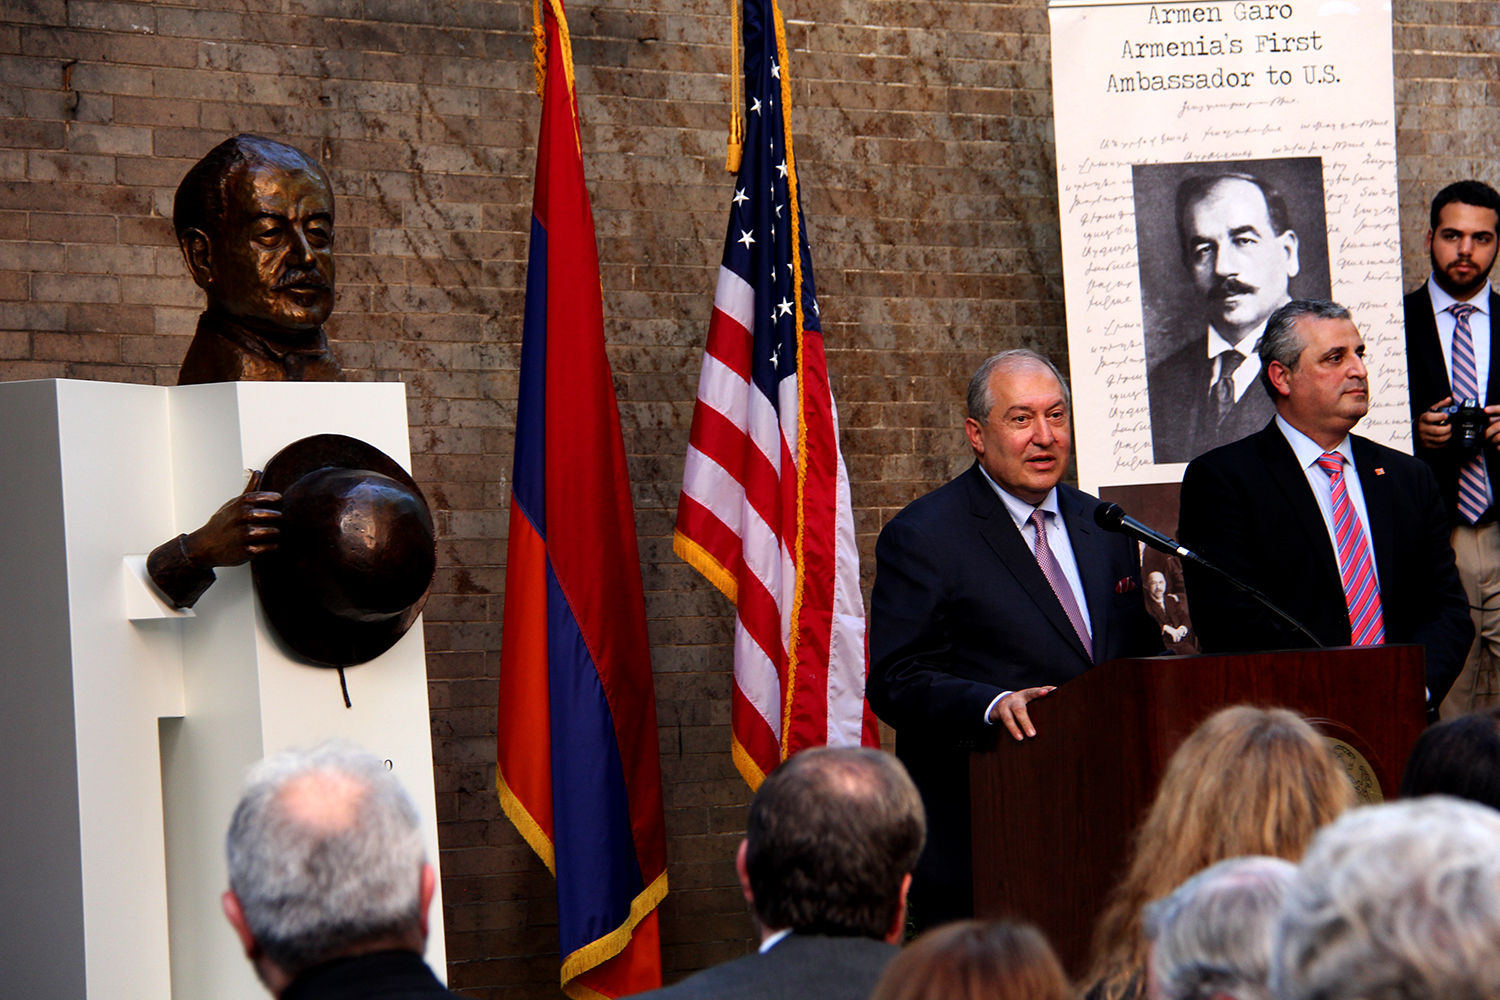 Armen Garo Statue Unveiled at Armenian Embassy in Washington, DC